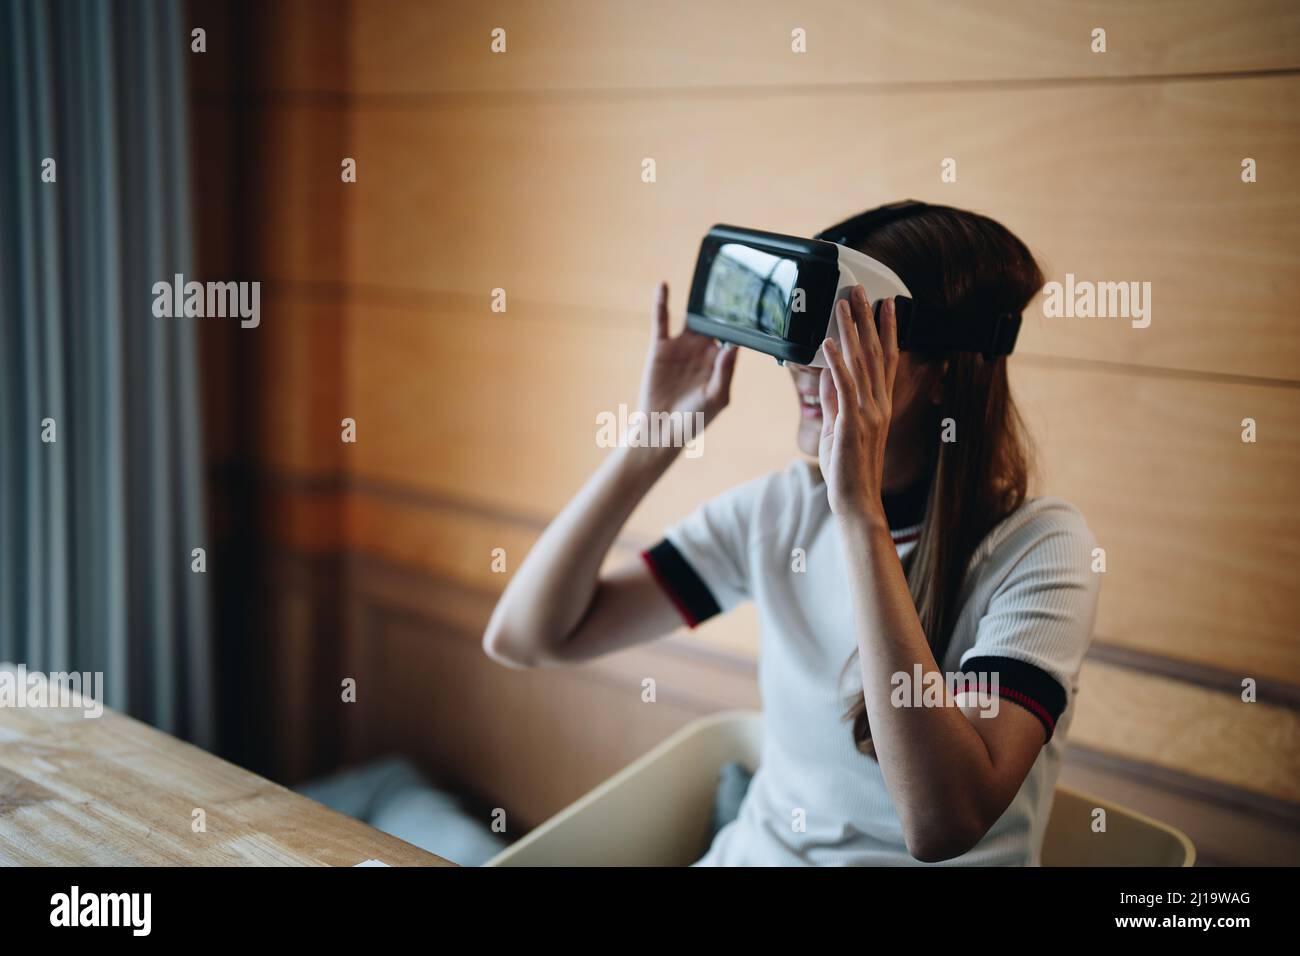 Une jeune femme asiatique pleine de joie porte un micro-casque vr et profite de son temps libre en réalité virtuelle. Femme multiraciale millénaire excitée jouant Banque D'Images